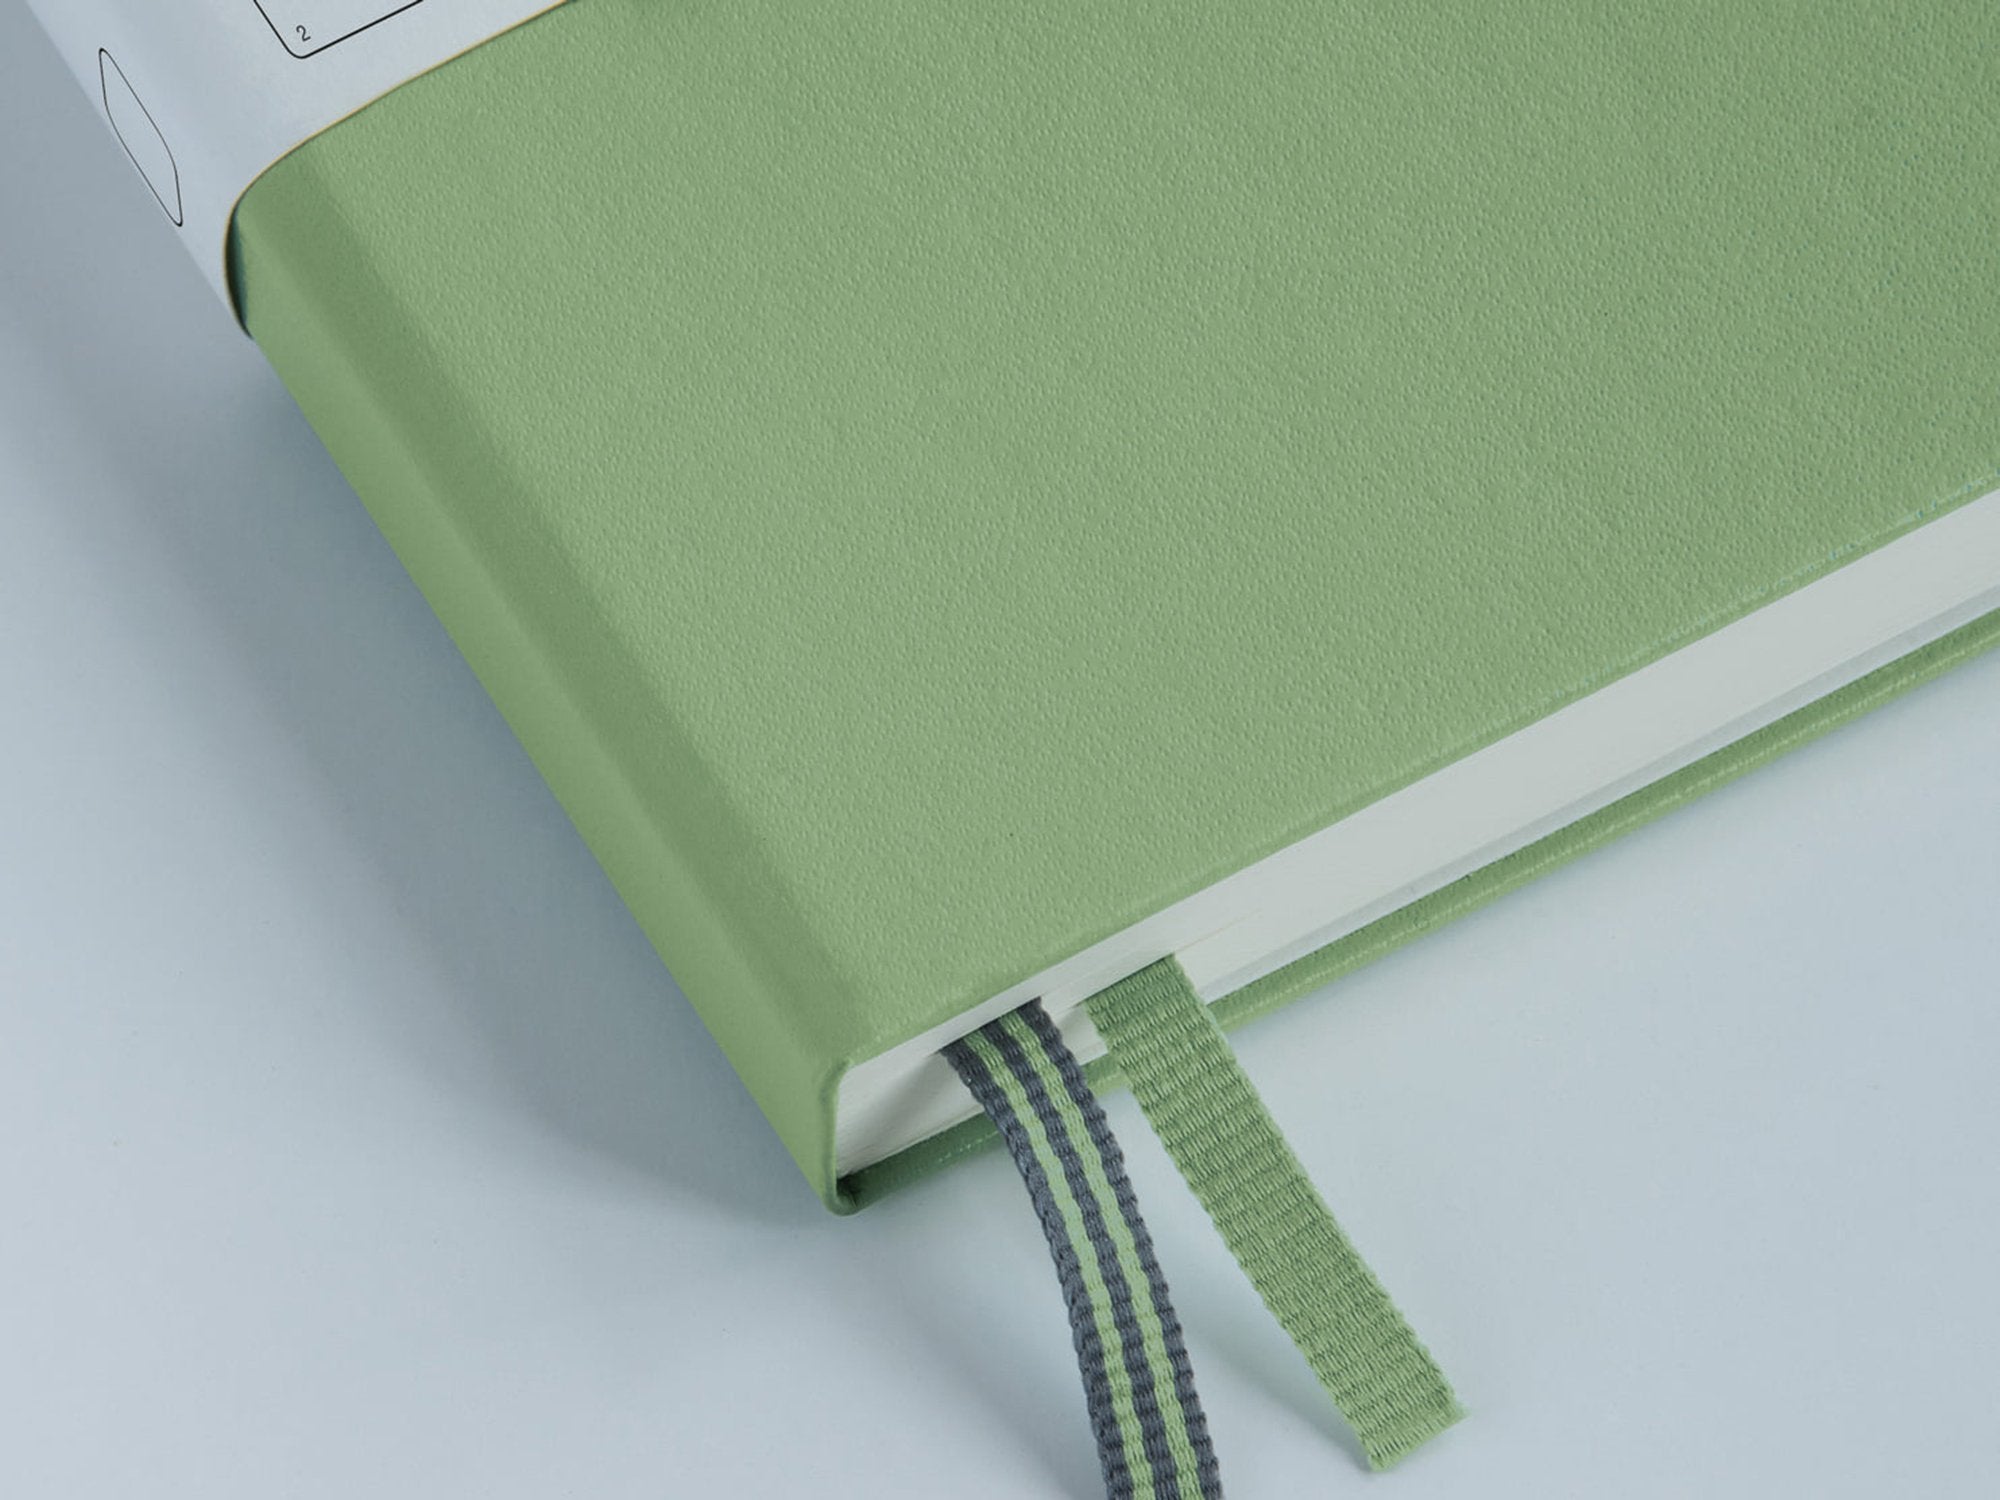 Leuchtturm 1917 Hardcover Notebook - Pacific Green – JB Custom Journals